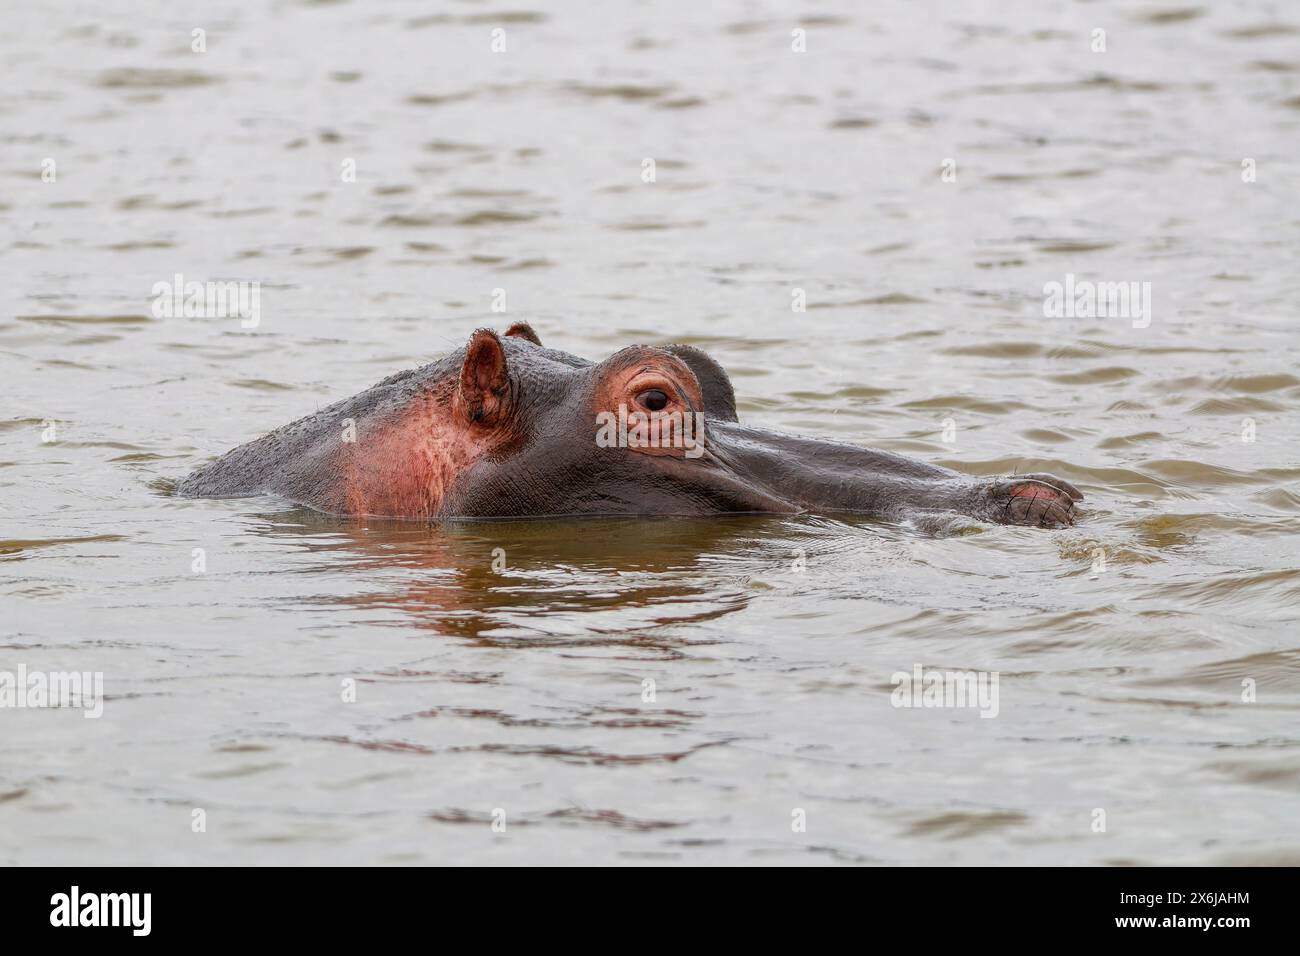 Hippopotame (Hippopotamus amphibius), adulte dans l'eau, gros plan, profil, Sunset Dam, parc national Kruger, Afrique du Sud, Afrique Banque D'Images